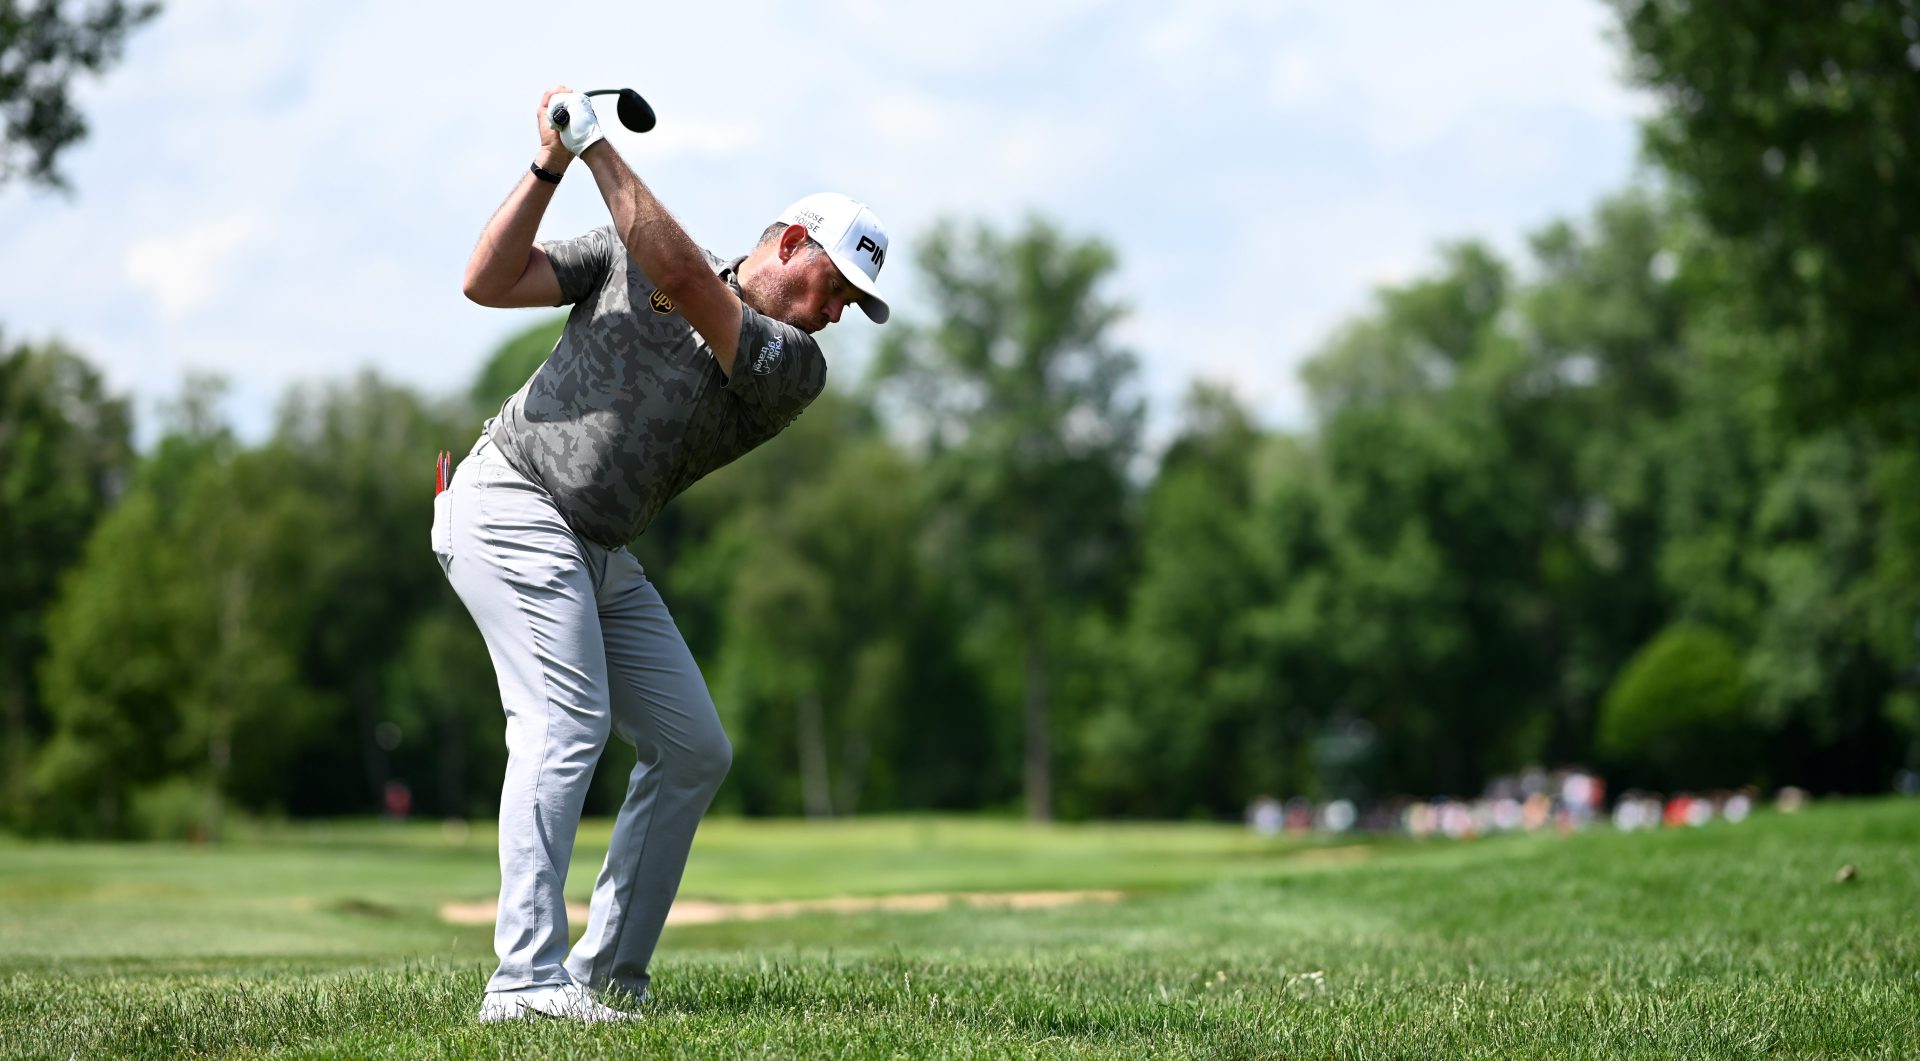 Golfer European Tour thể hiện tinh thần cao thượng dù bị làm phiền trong cú đánh